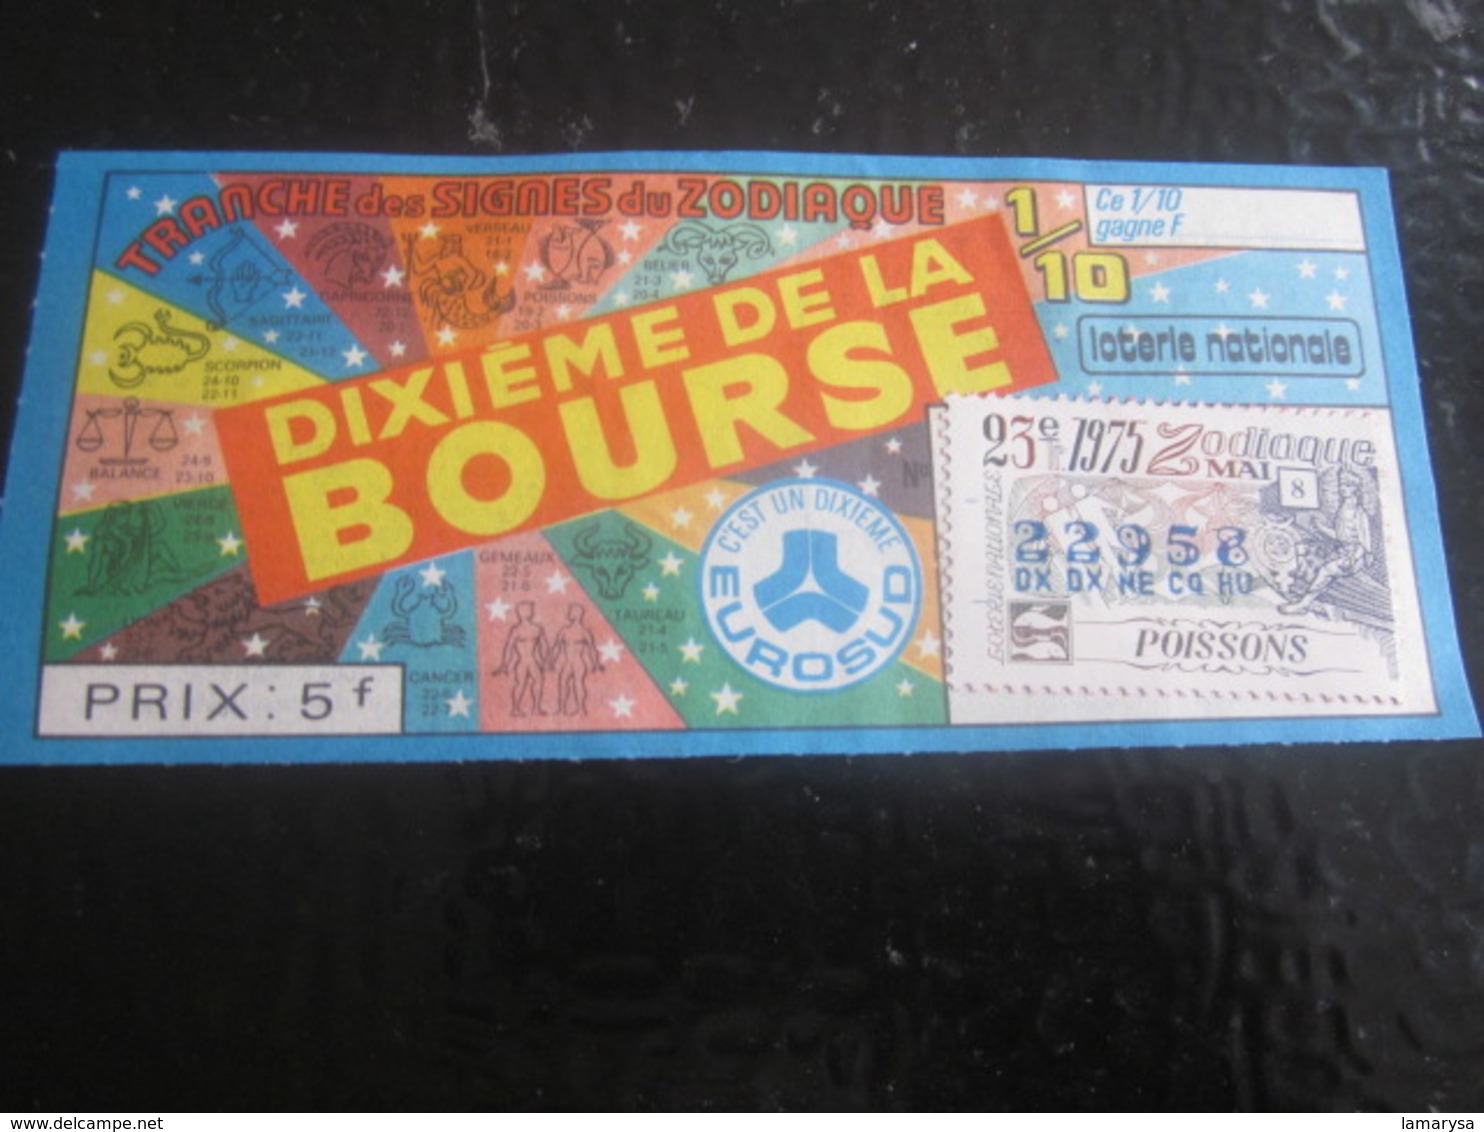 Billet Loterie Nationale Française 1975-1/10é Bourse Marseille Lottery-Scratch-Ticket-Vignette Signe Zodiaque Poissons - Billets De Loterie